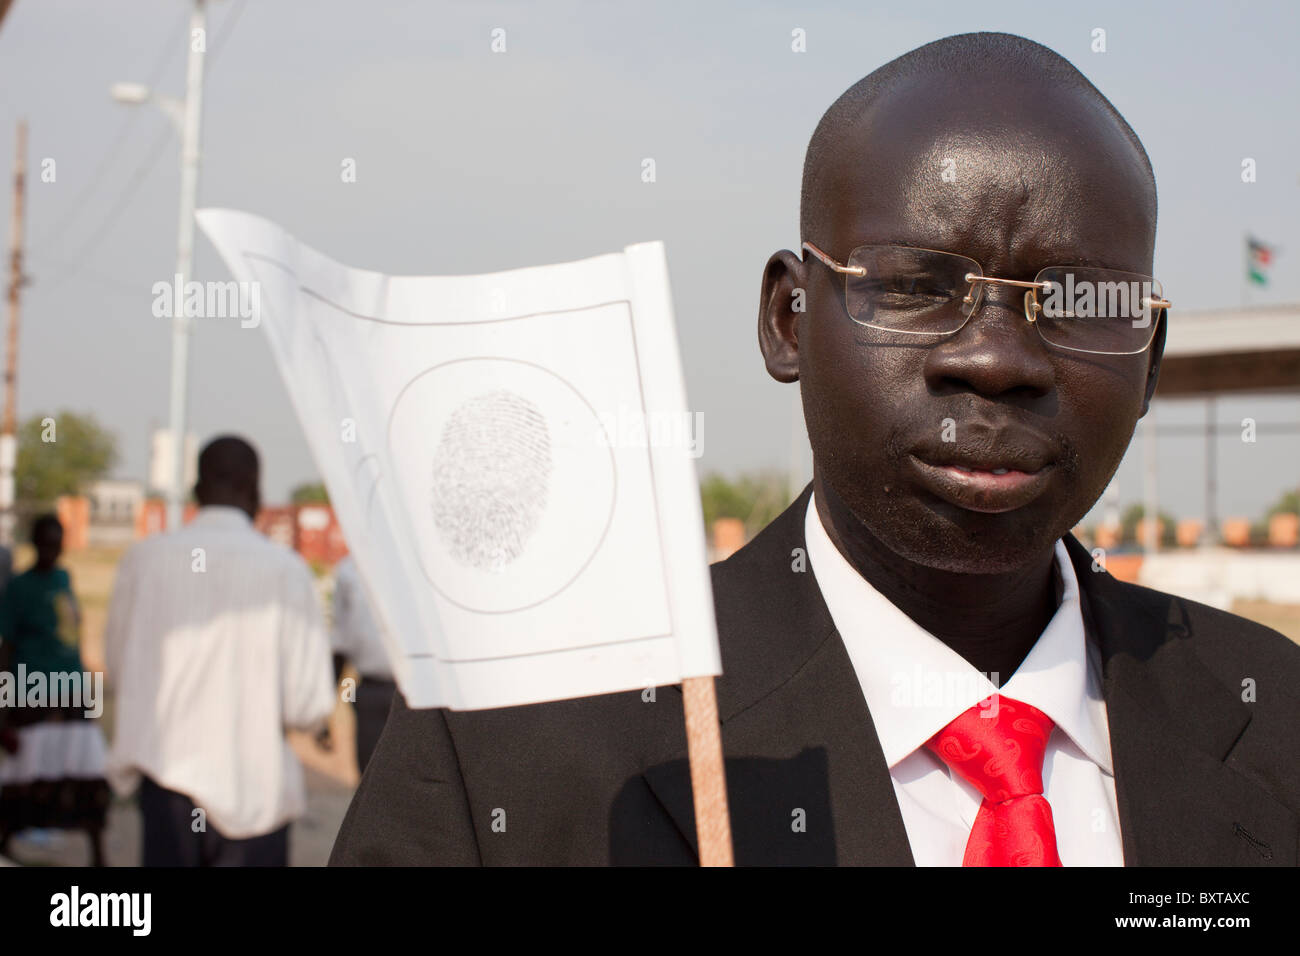 Südlichen Sudan Rückkehrer registrieren, um in der 9. Januar 2011 Referendum in der Gedenkstätte John Garang in Juba abzustimmen. Stockfoto